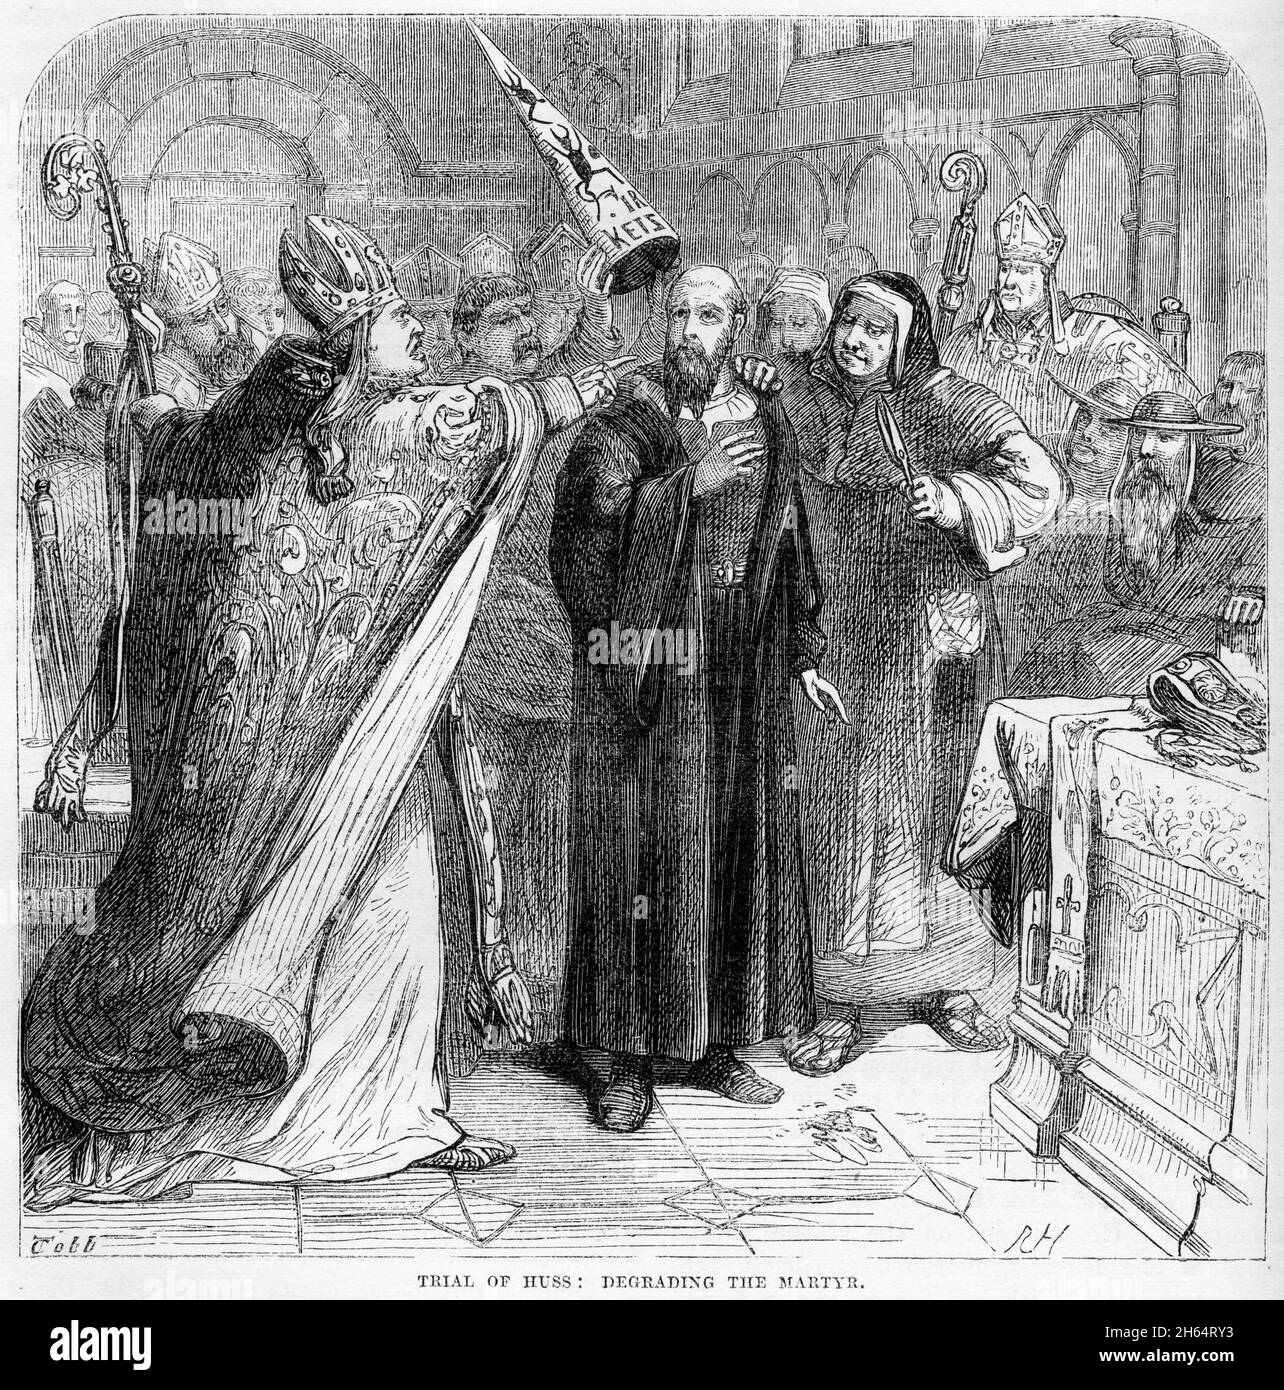 Incisione di Jan Hus (1372 – 1415) che viene deriso al suo processo da parte del clero cattolico. Hus era un teologo e filosofo ceco che divenne un riformatore della Chiesa e l'ispirazione dell'Hussitismo, un predecessore chiave del protestantesimo e una figura seminale nella riforma Boema. Foto Stock